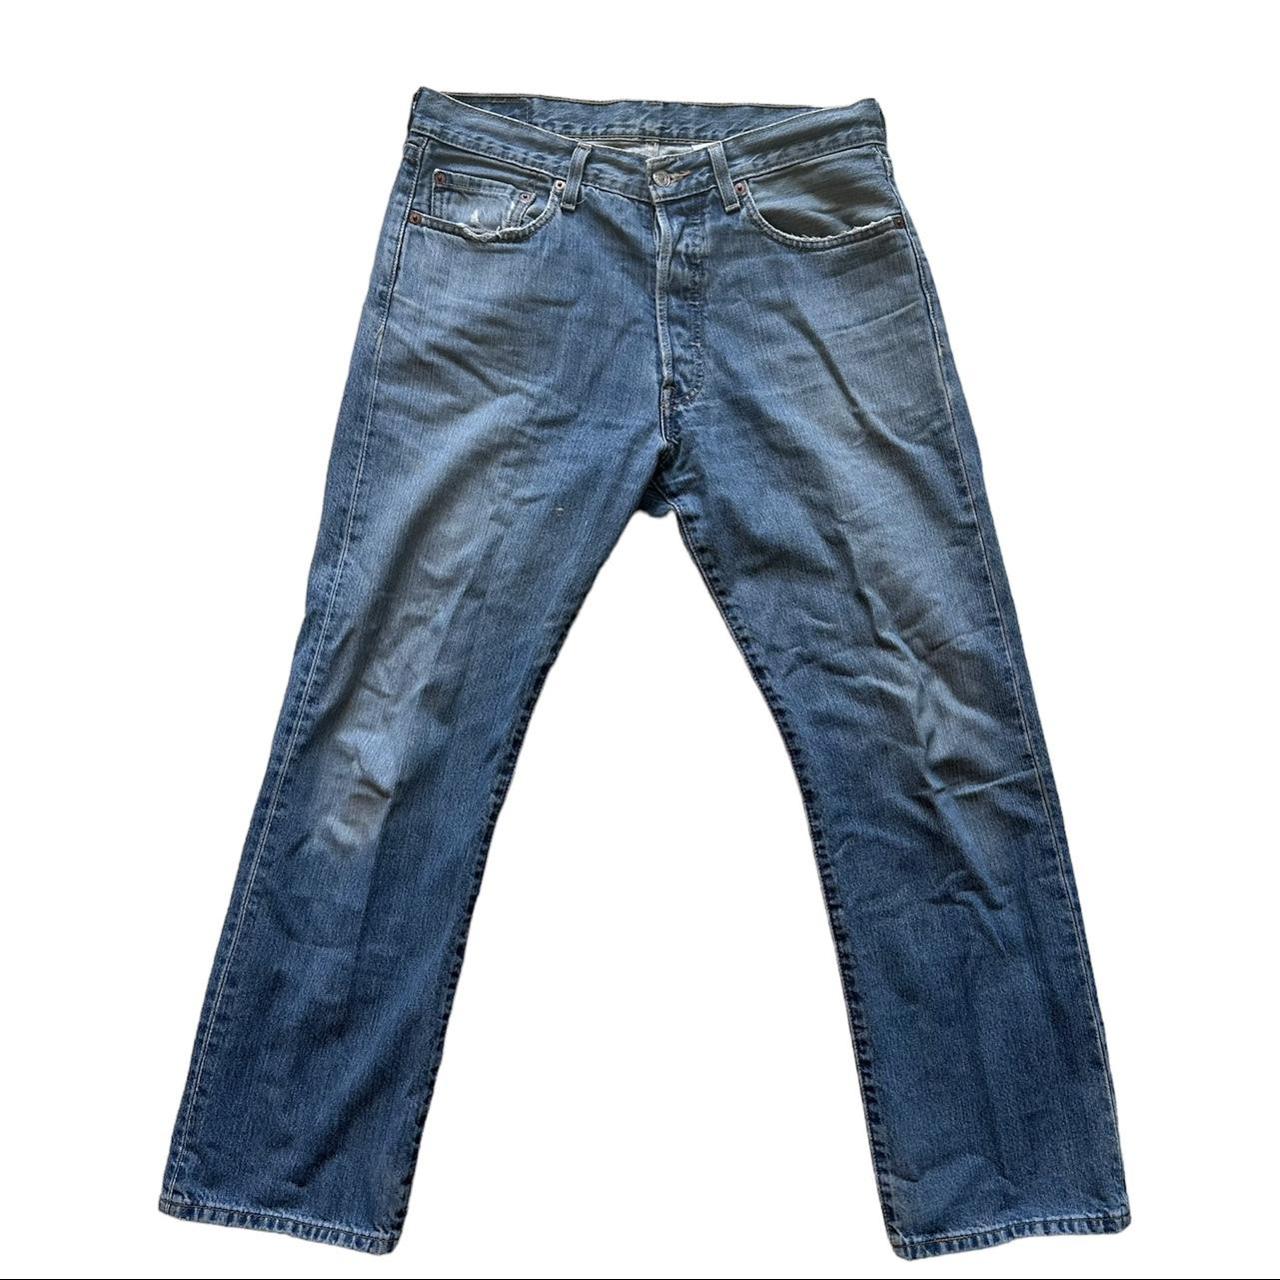 Vintage Levi’s 501’s jeans Vintage 2000’s light... - Depop